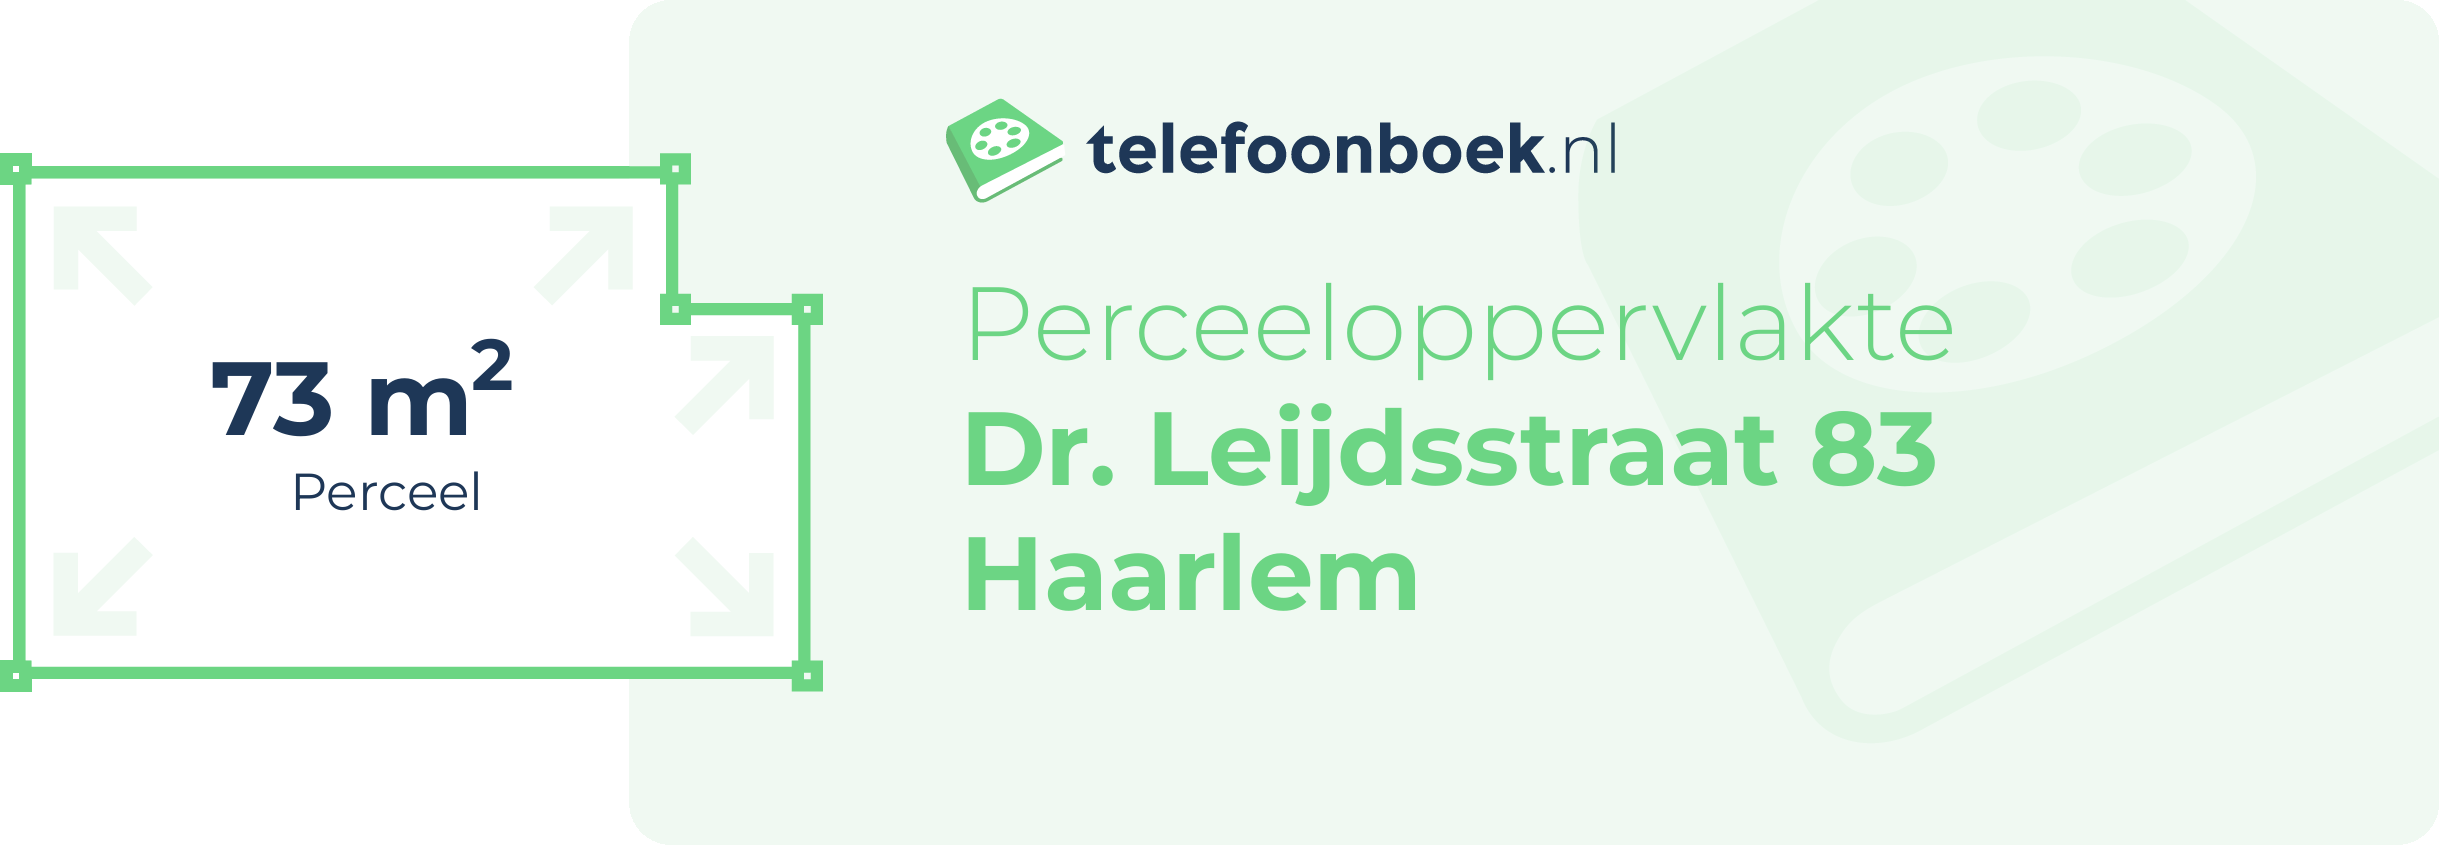 Perceeloppervlakte Dr. Leijdsstraat 83 Haarlem